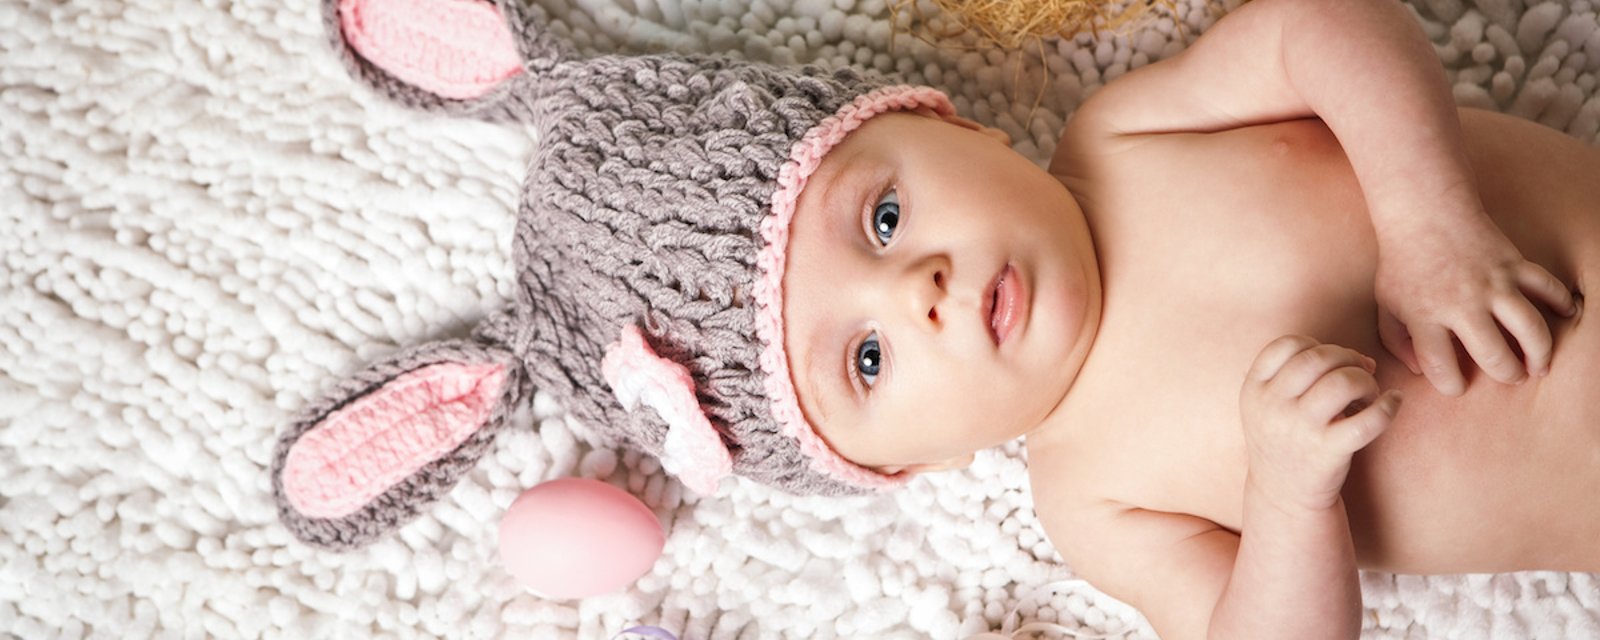 10 choses à savoir sur les bébés nés en avril